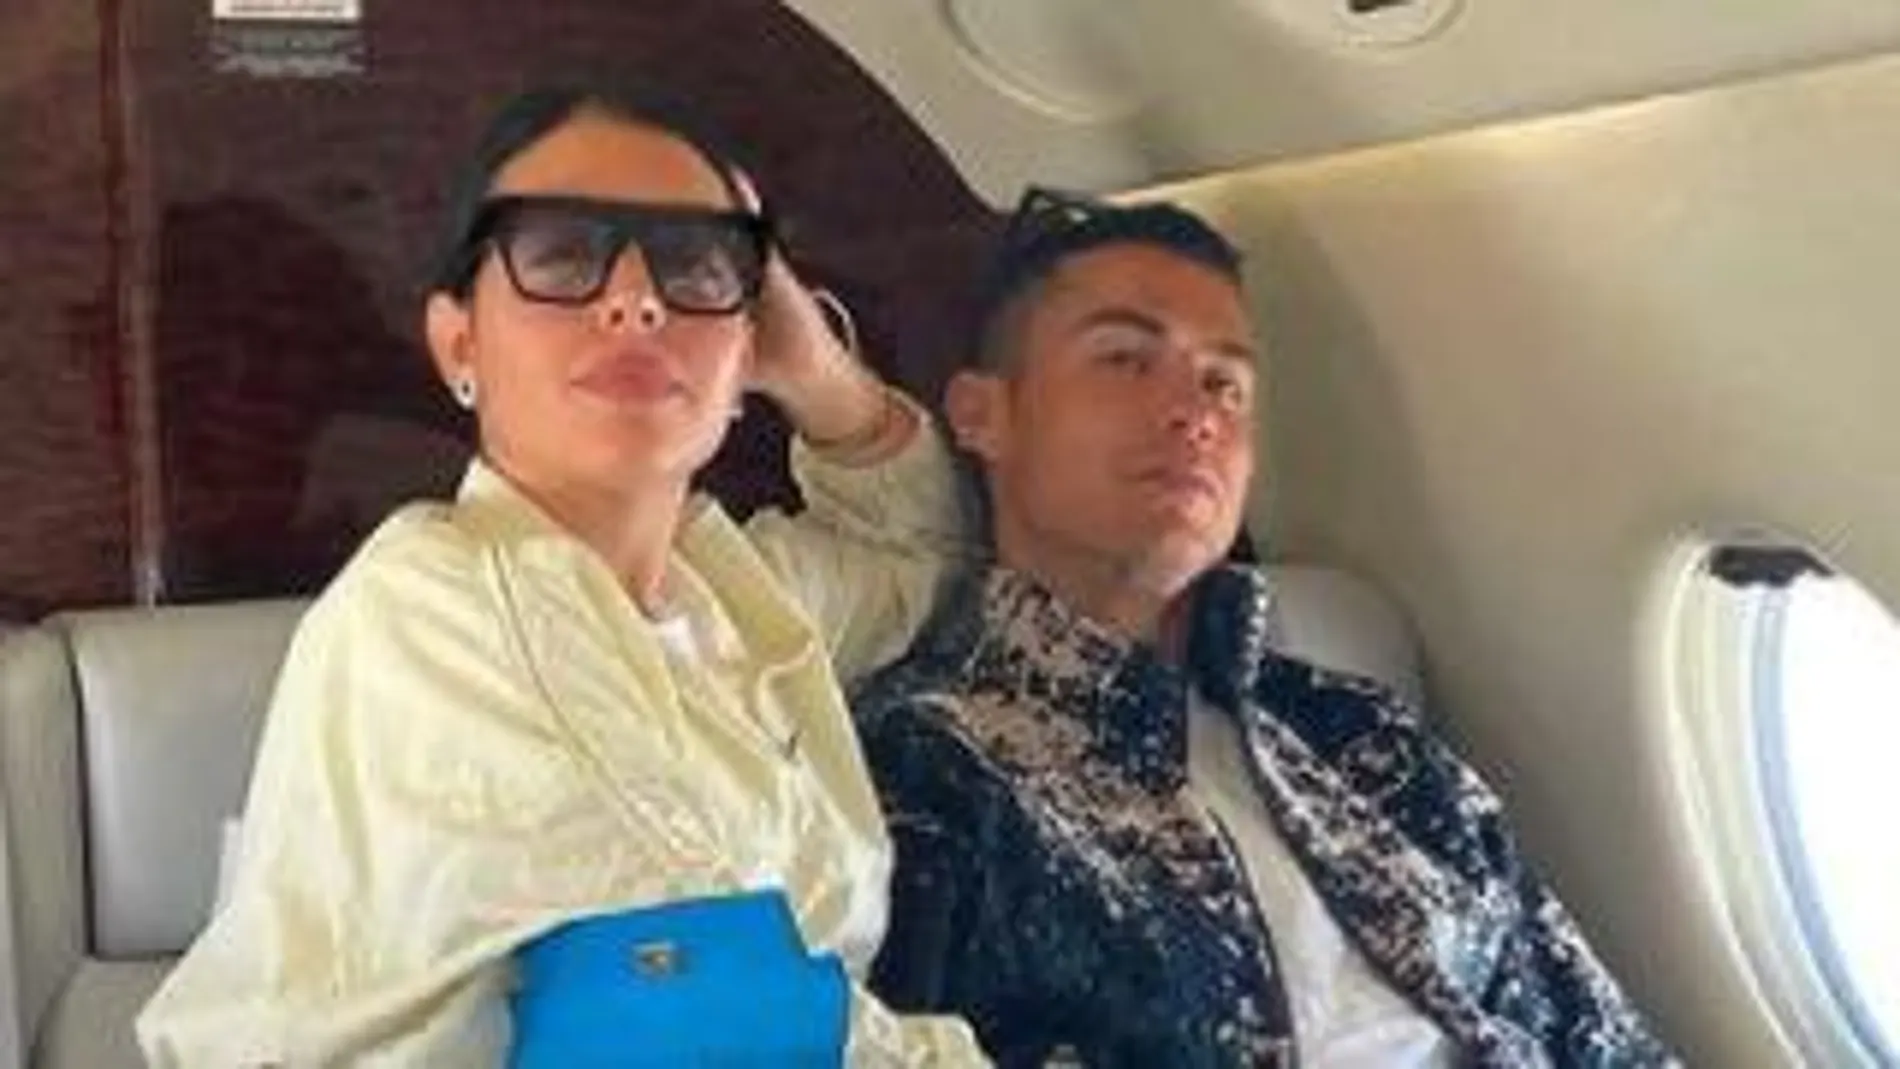 Georgina arrasa con una nueva imagen junto a Cristiano Ronaldo